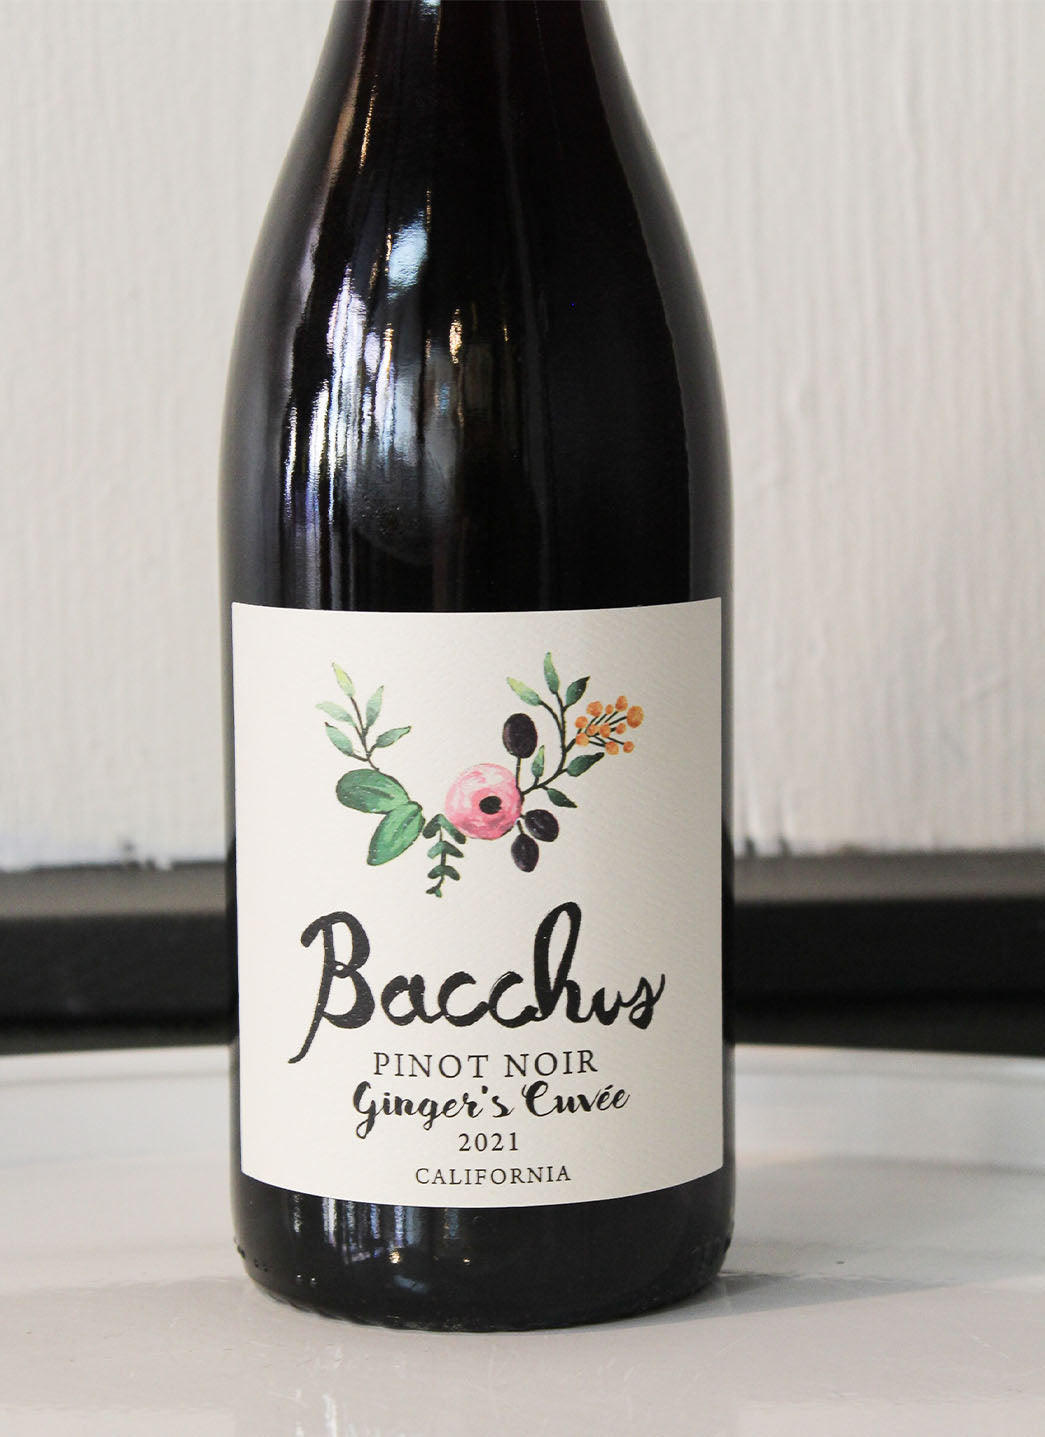 Bacchus Ginger's Cove Pinot Noir